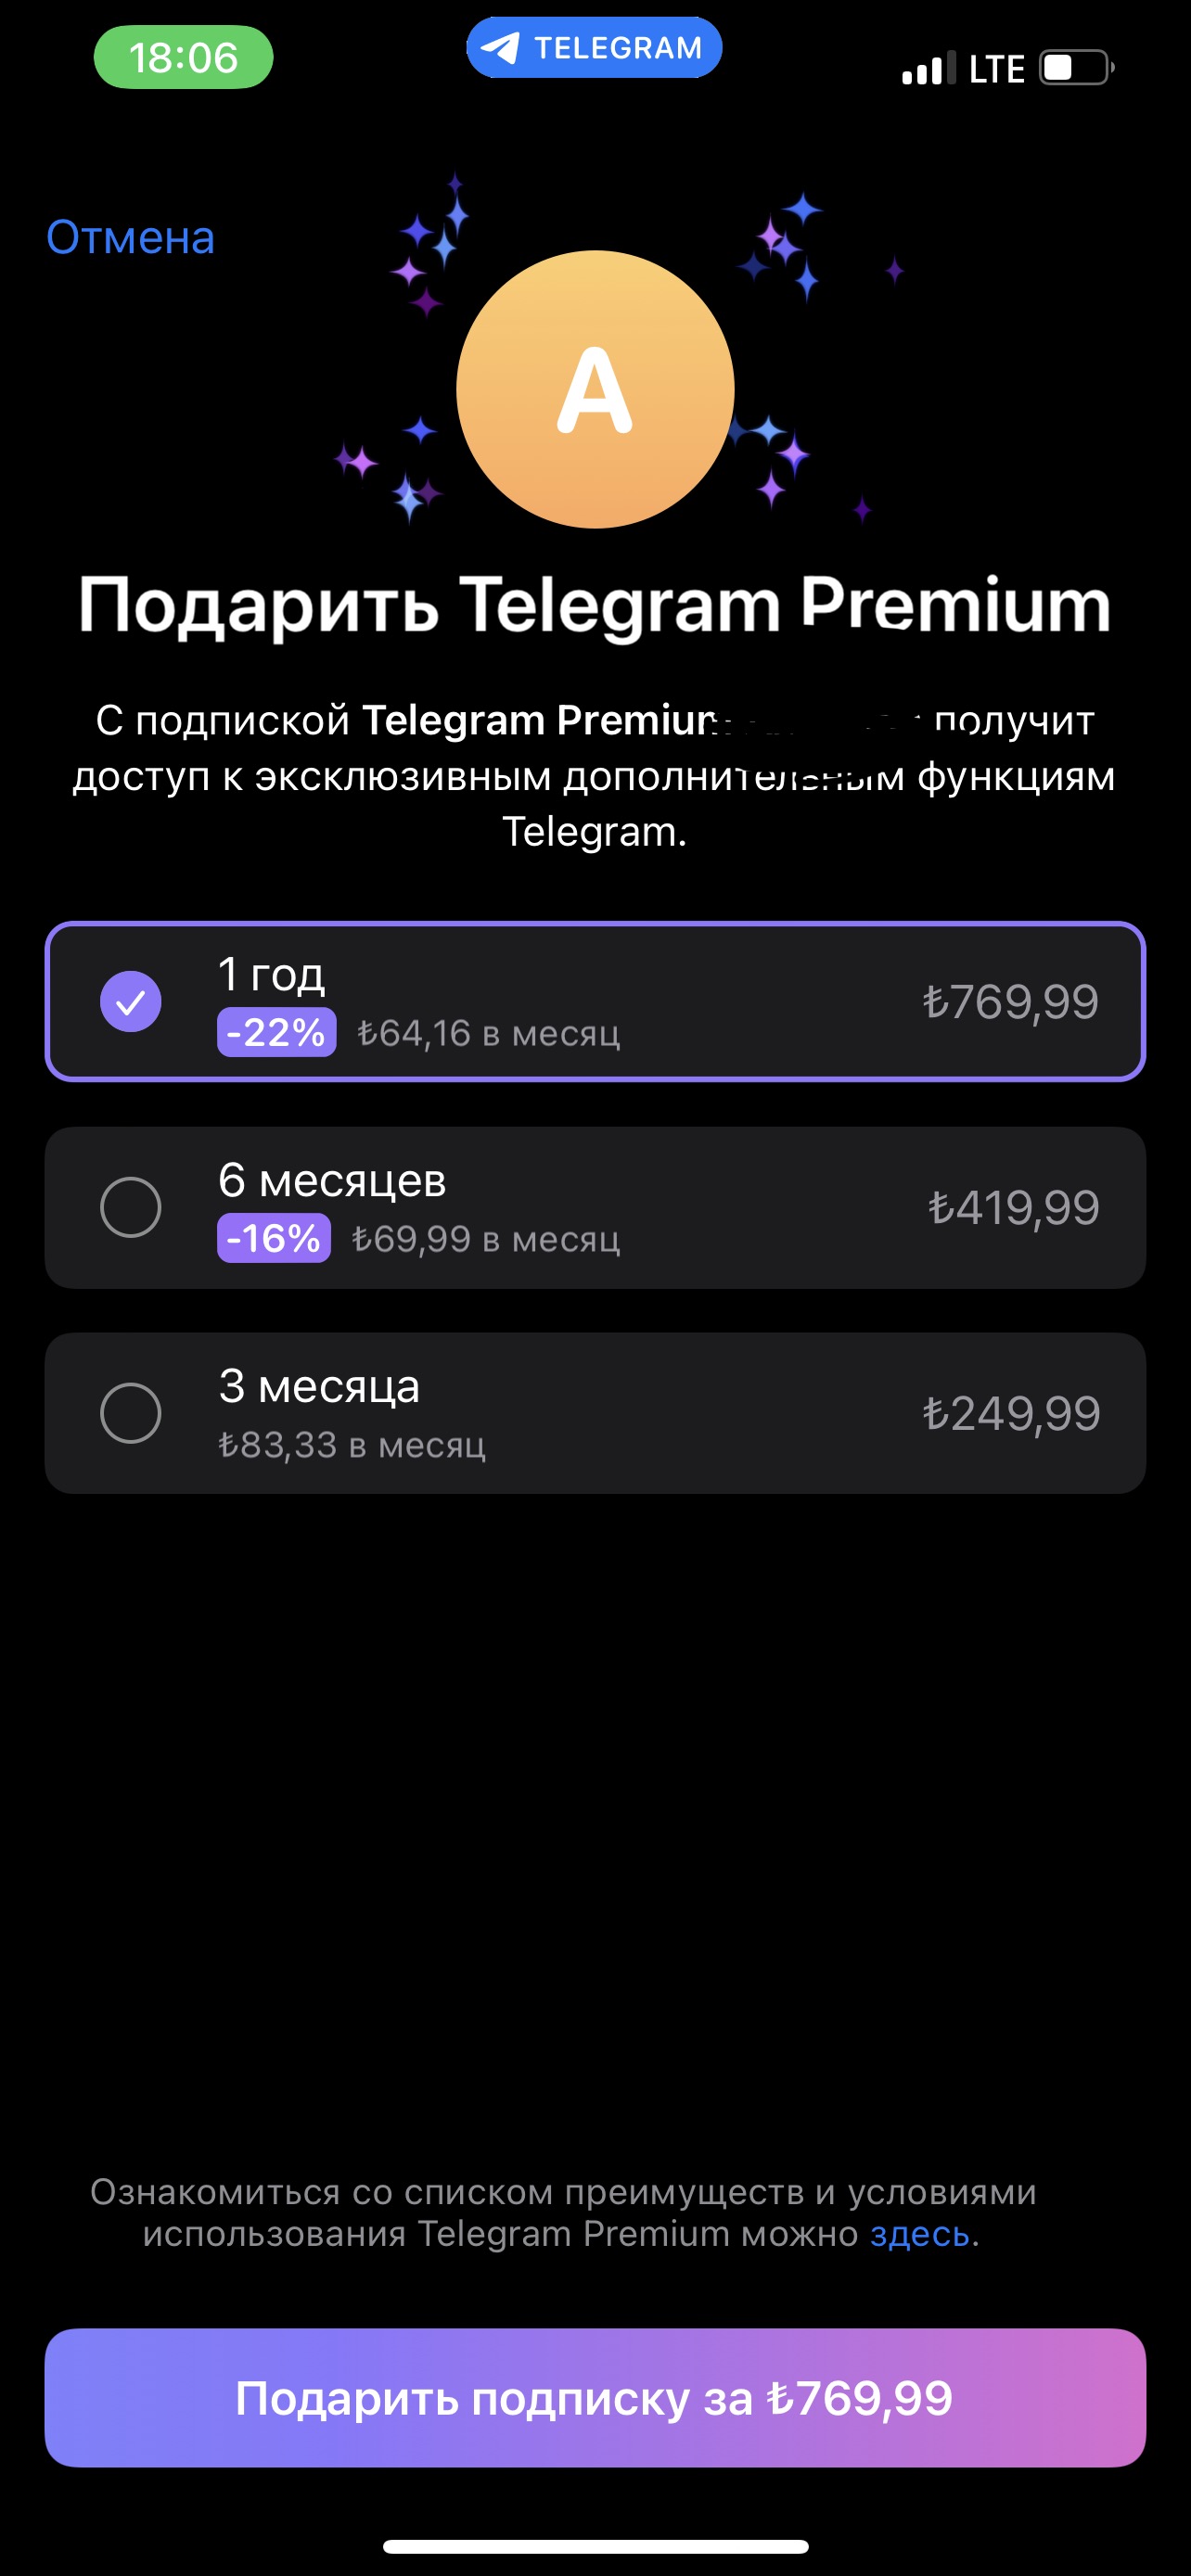 Telegram premium 50 руб/мес [Cпособ] - Mipped